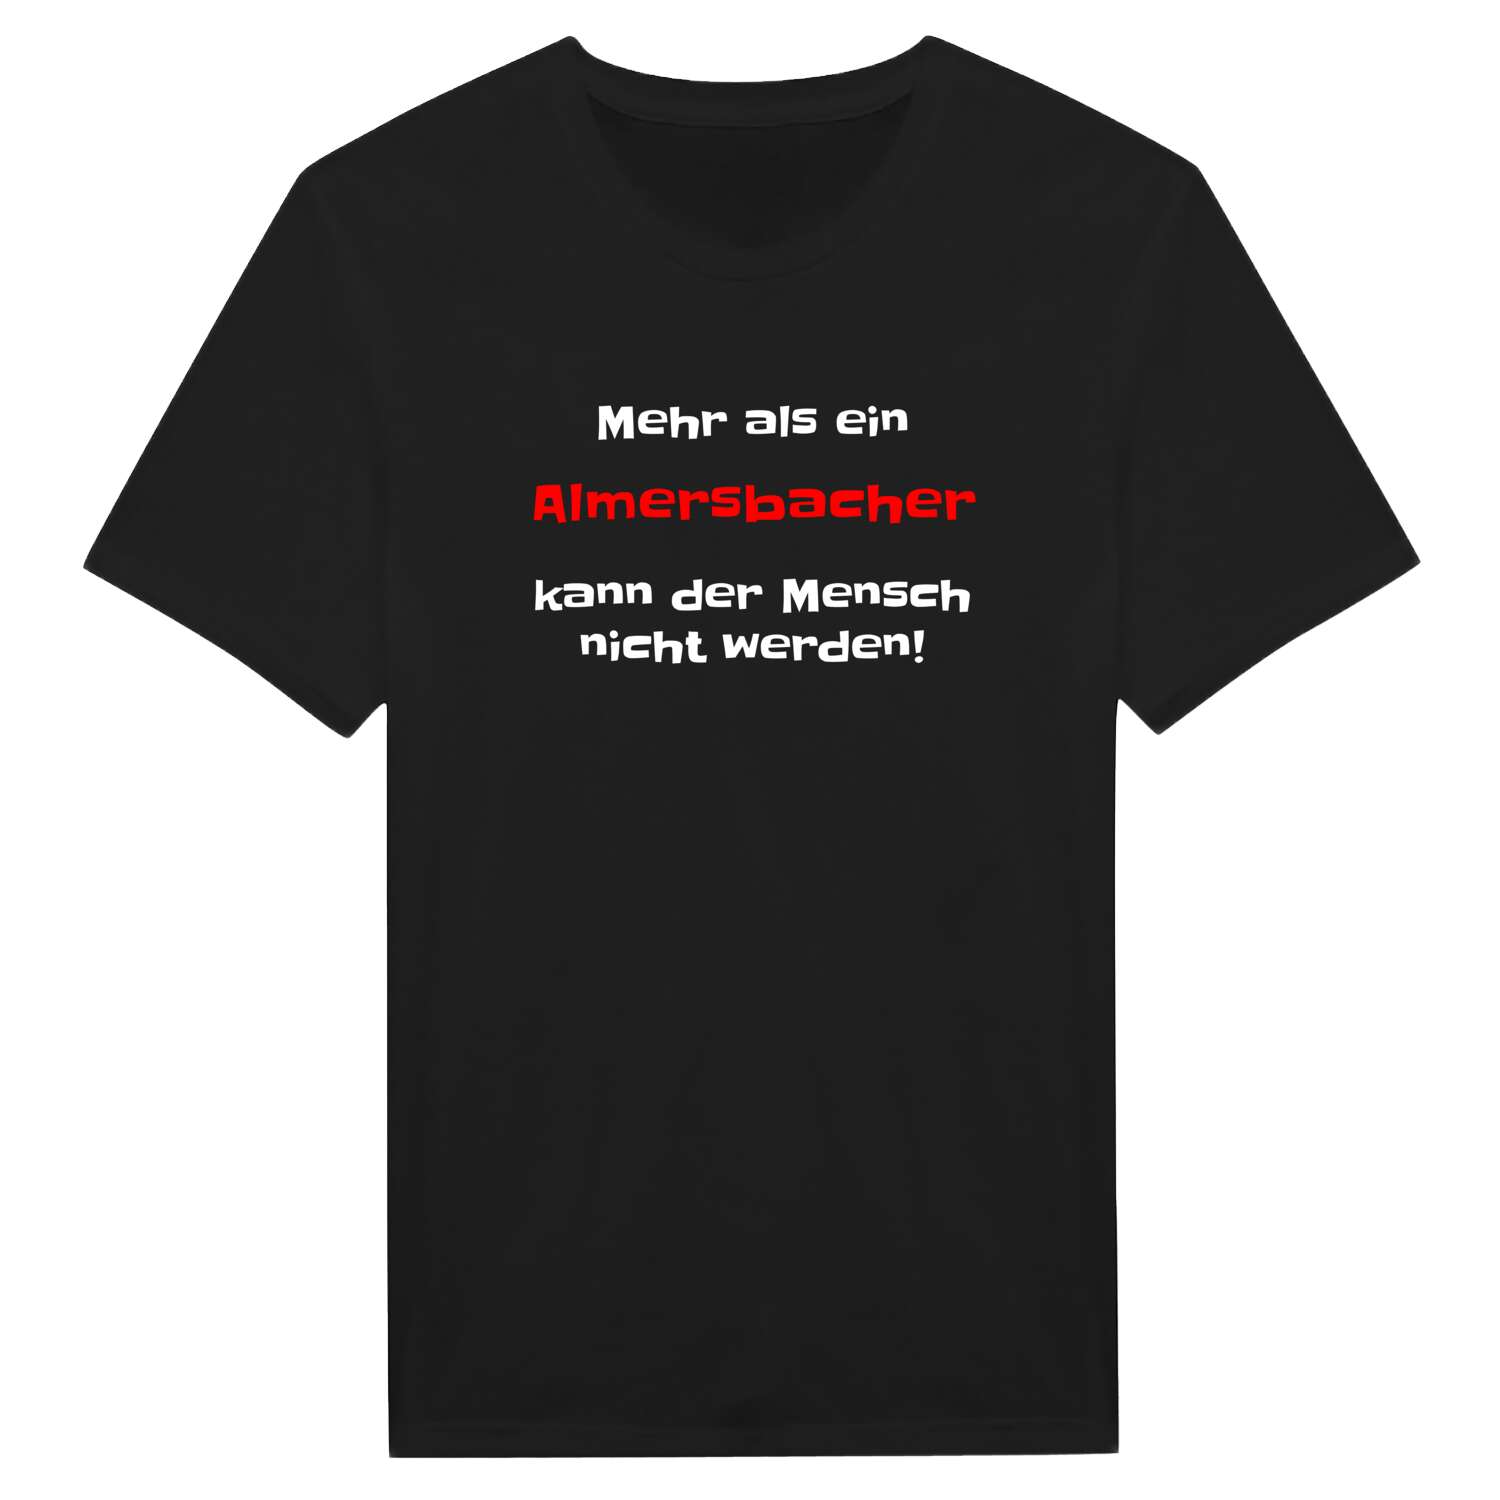 Almersbach T-Shirt »Mehr als ein«